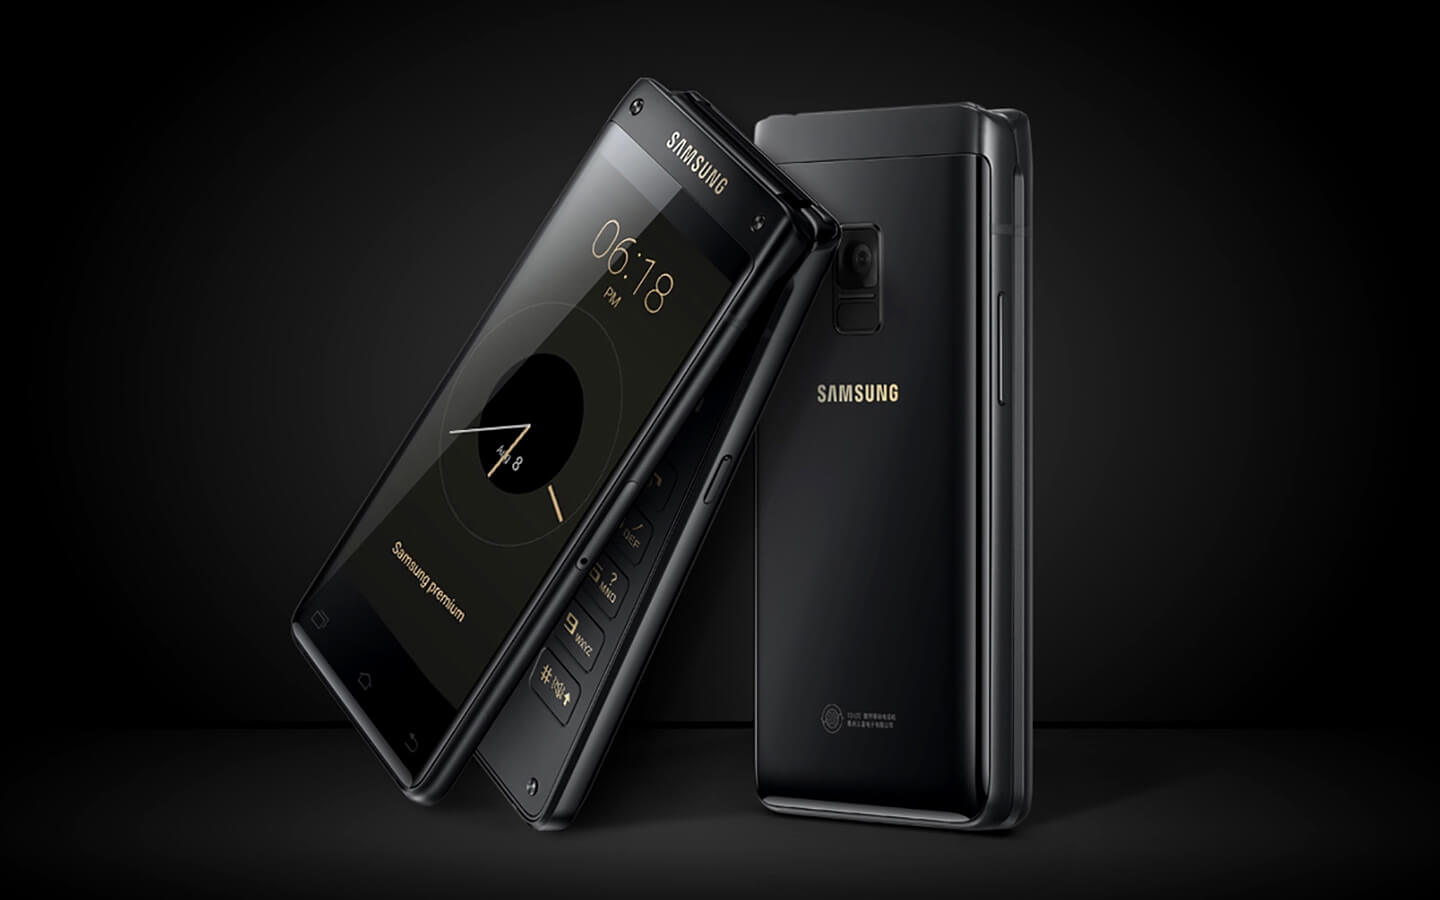 Samsung W2018